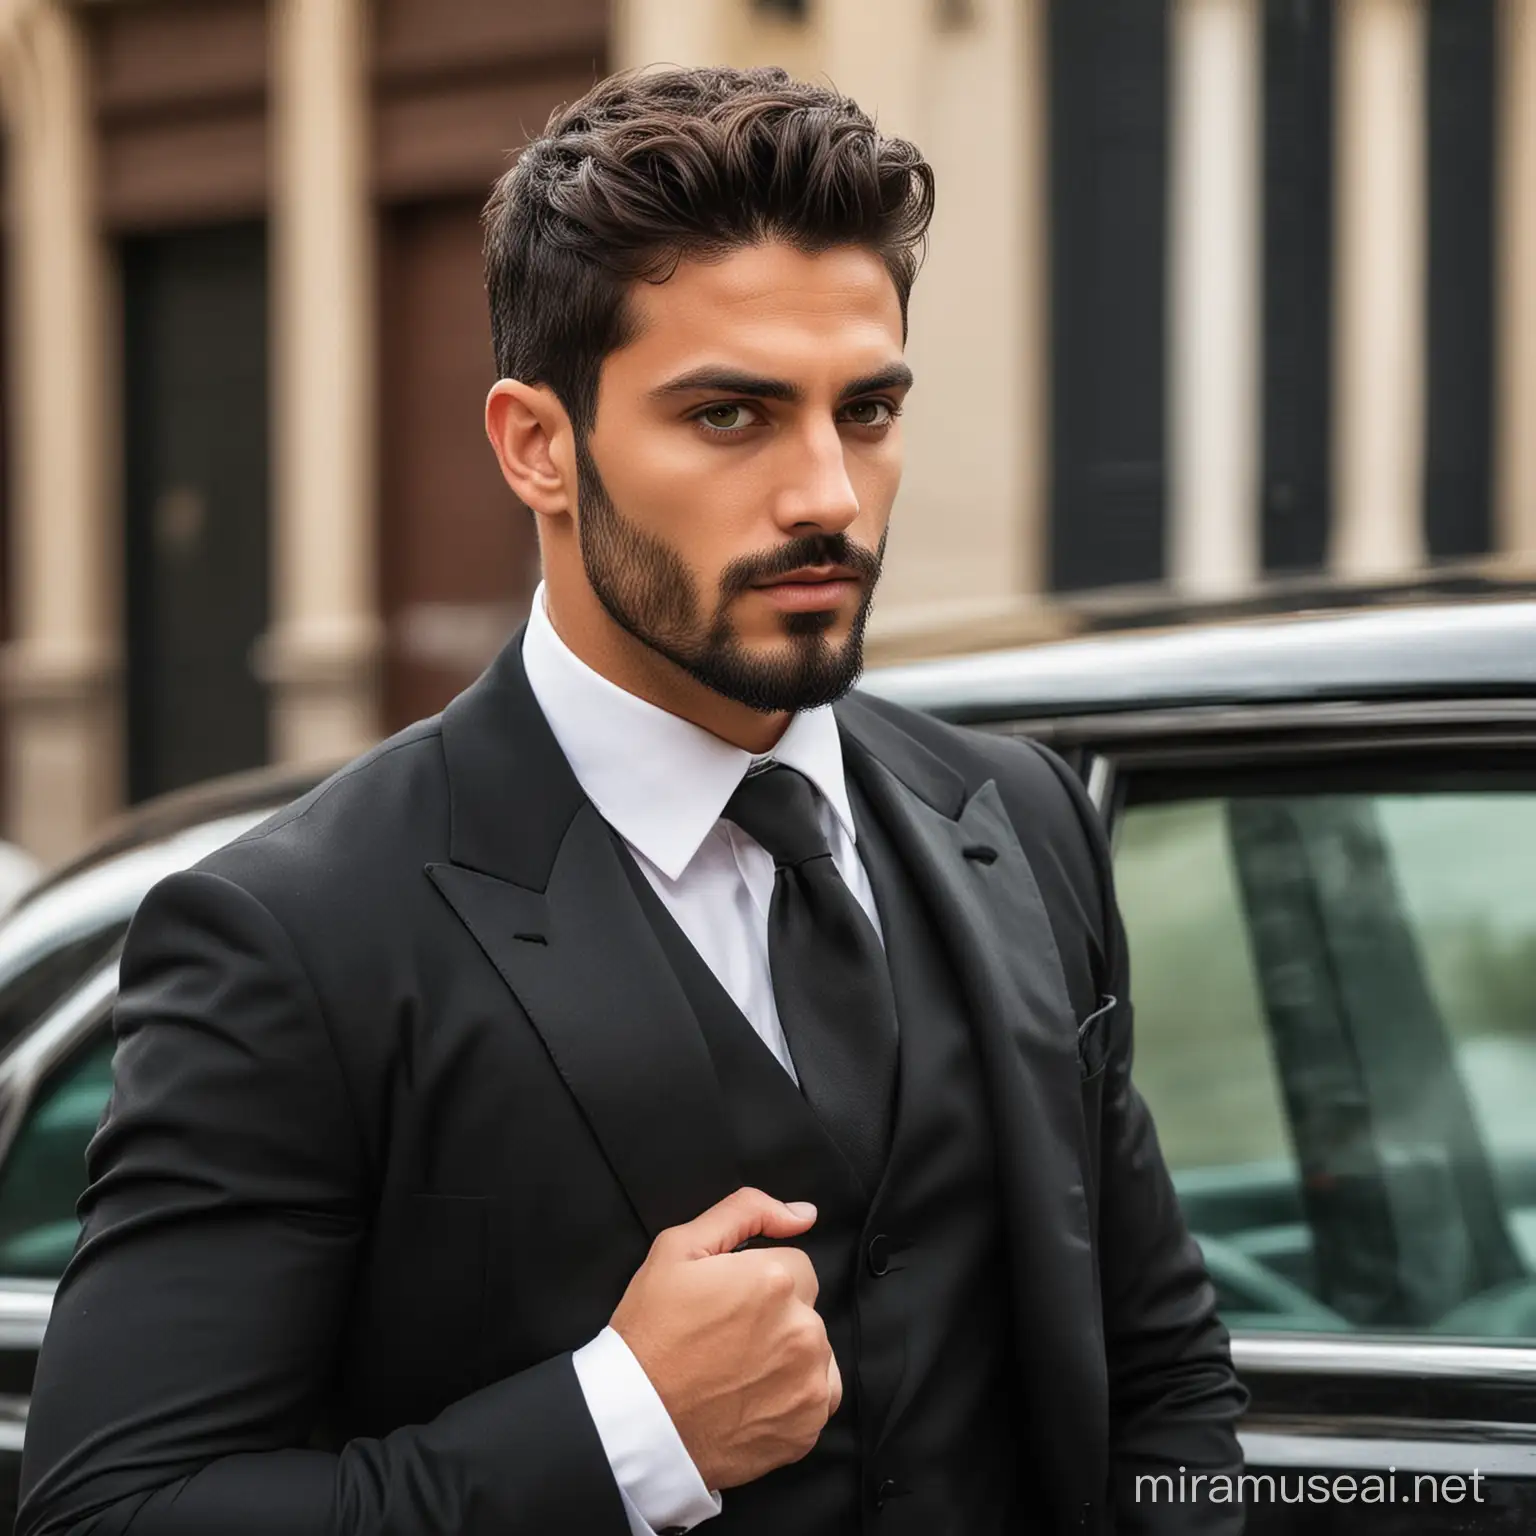 Ruthless Italian Mafia Boss in Black Tuxedo Suit by Car